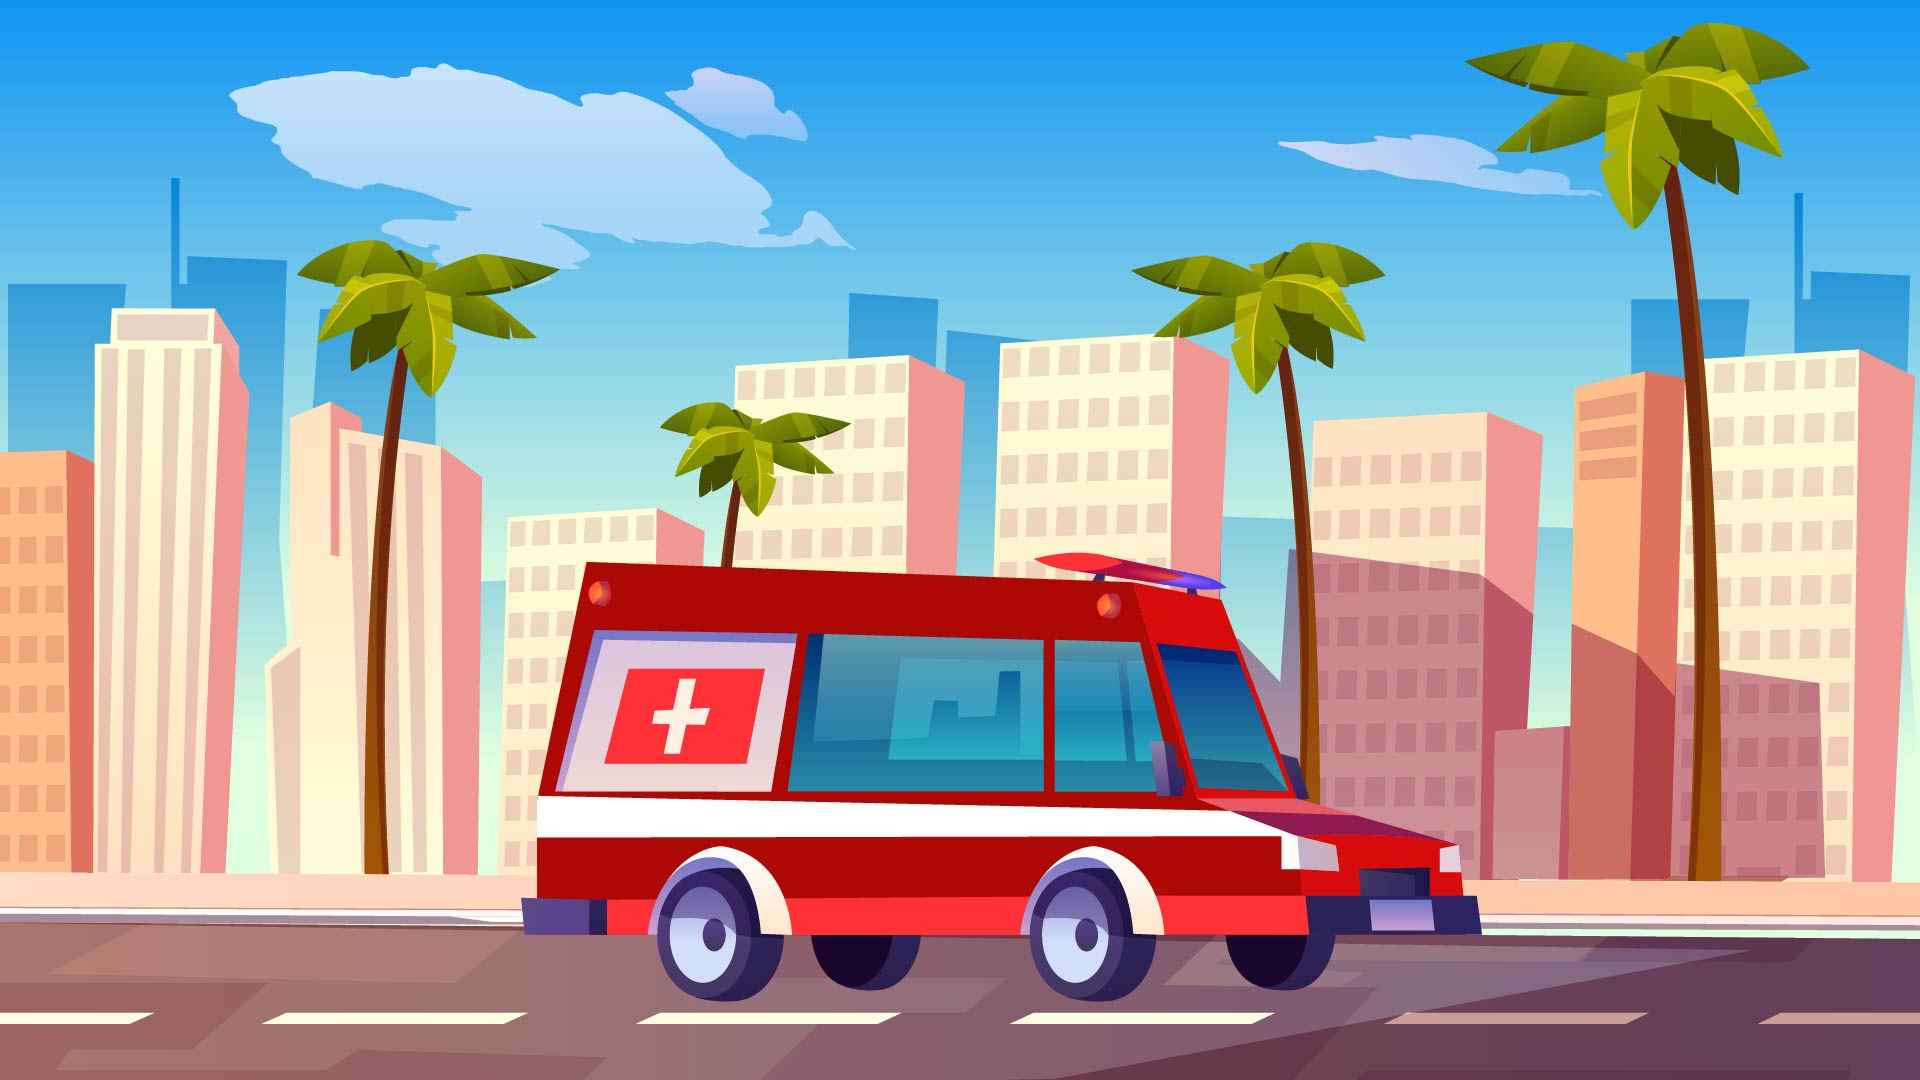 Car - animated image